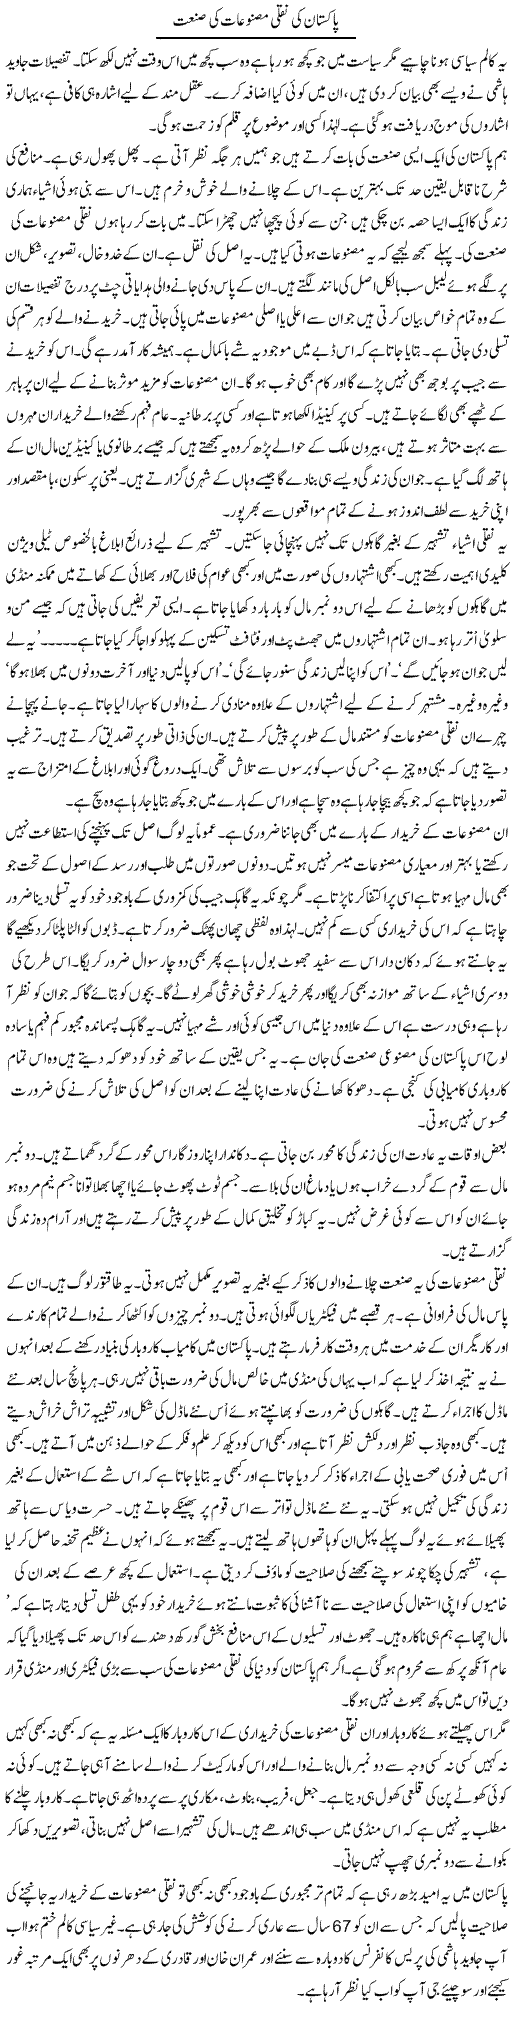 Pakistan Ki Naqli Masnuaat Ki Sanaet | Talat Hussain | Daily Urdu Columns